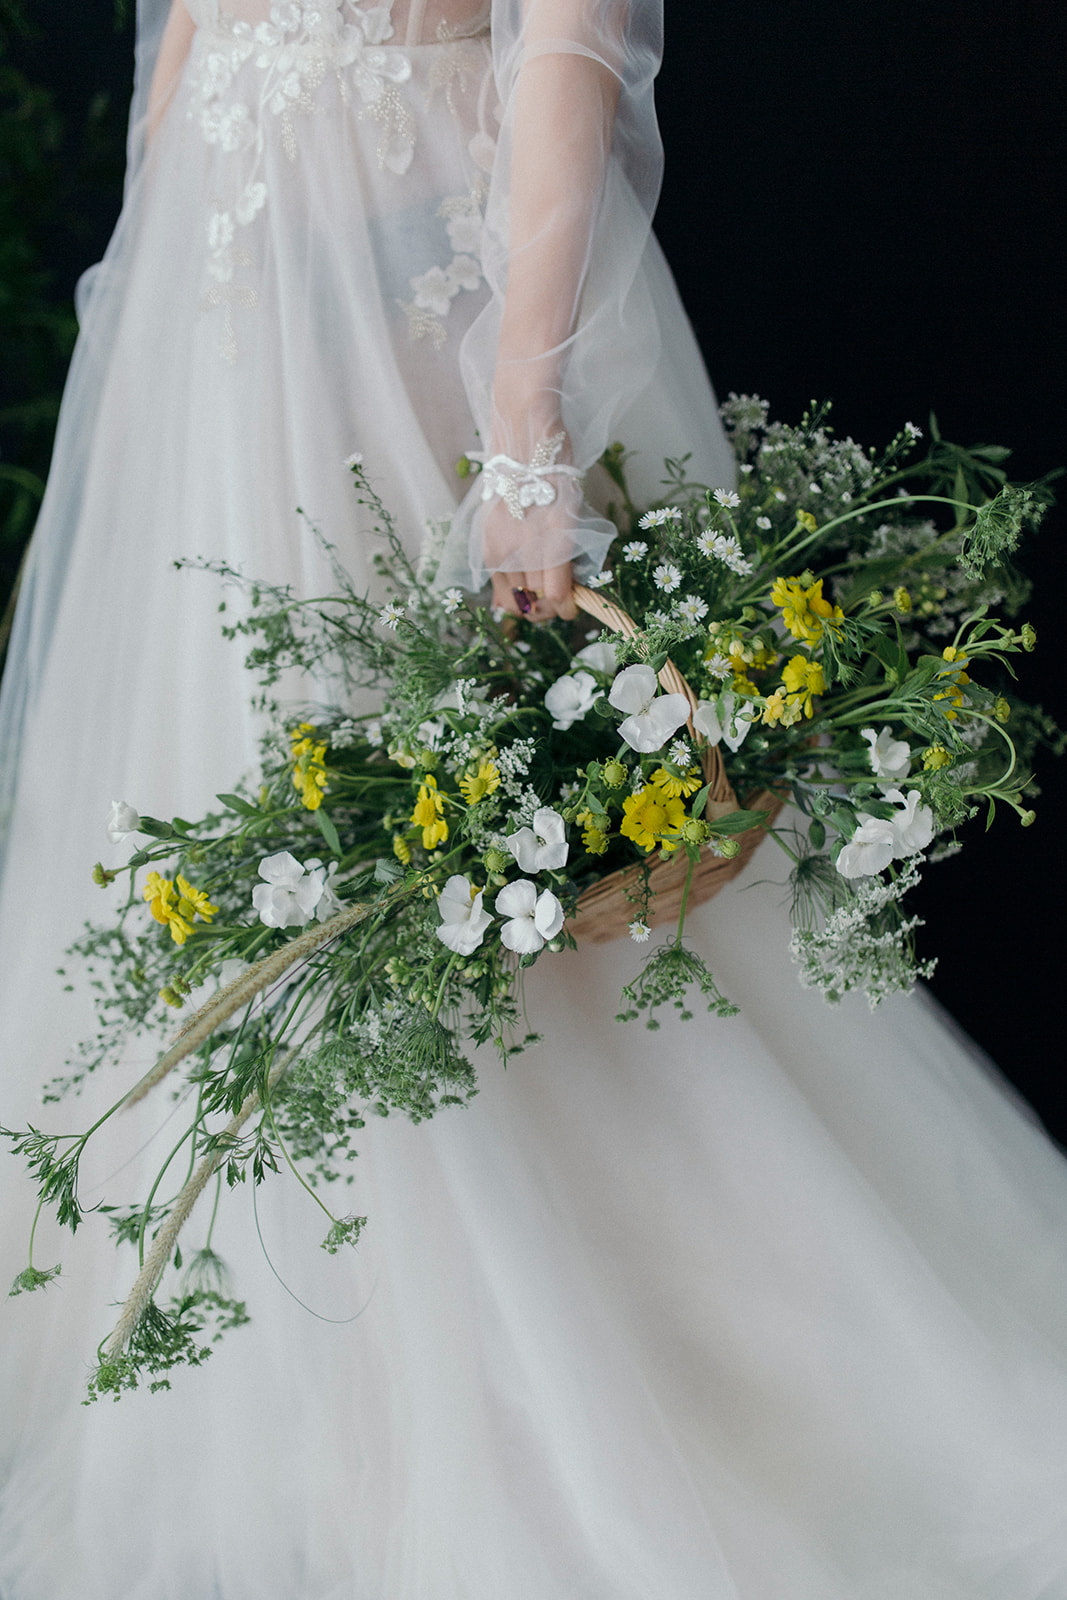 Mariage inspiré des tableaux de la Renaissance italienne panier de fleurs jaunes et blanches